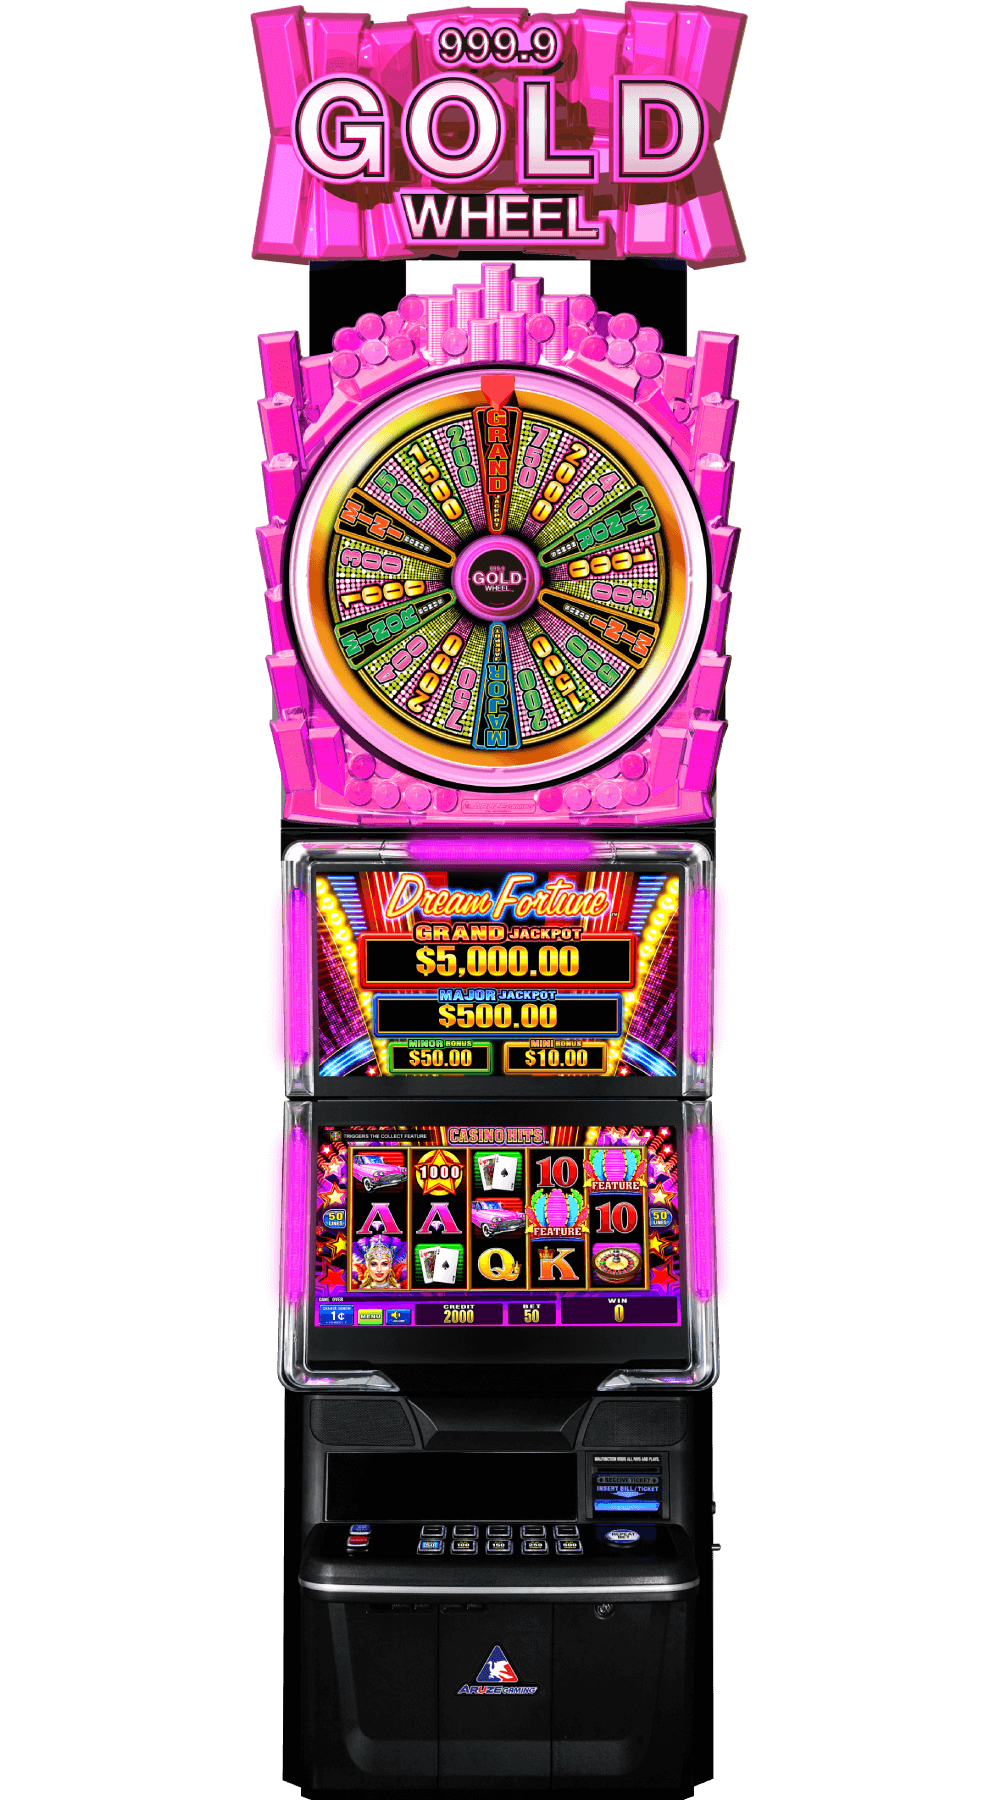 999.9 Gold Wheel – Dream Fortune Casino Hits